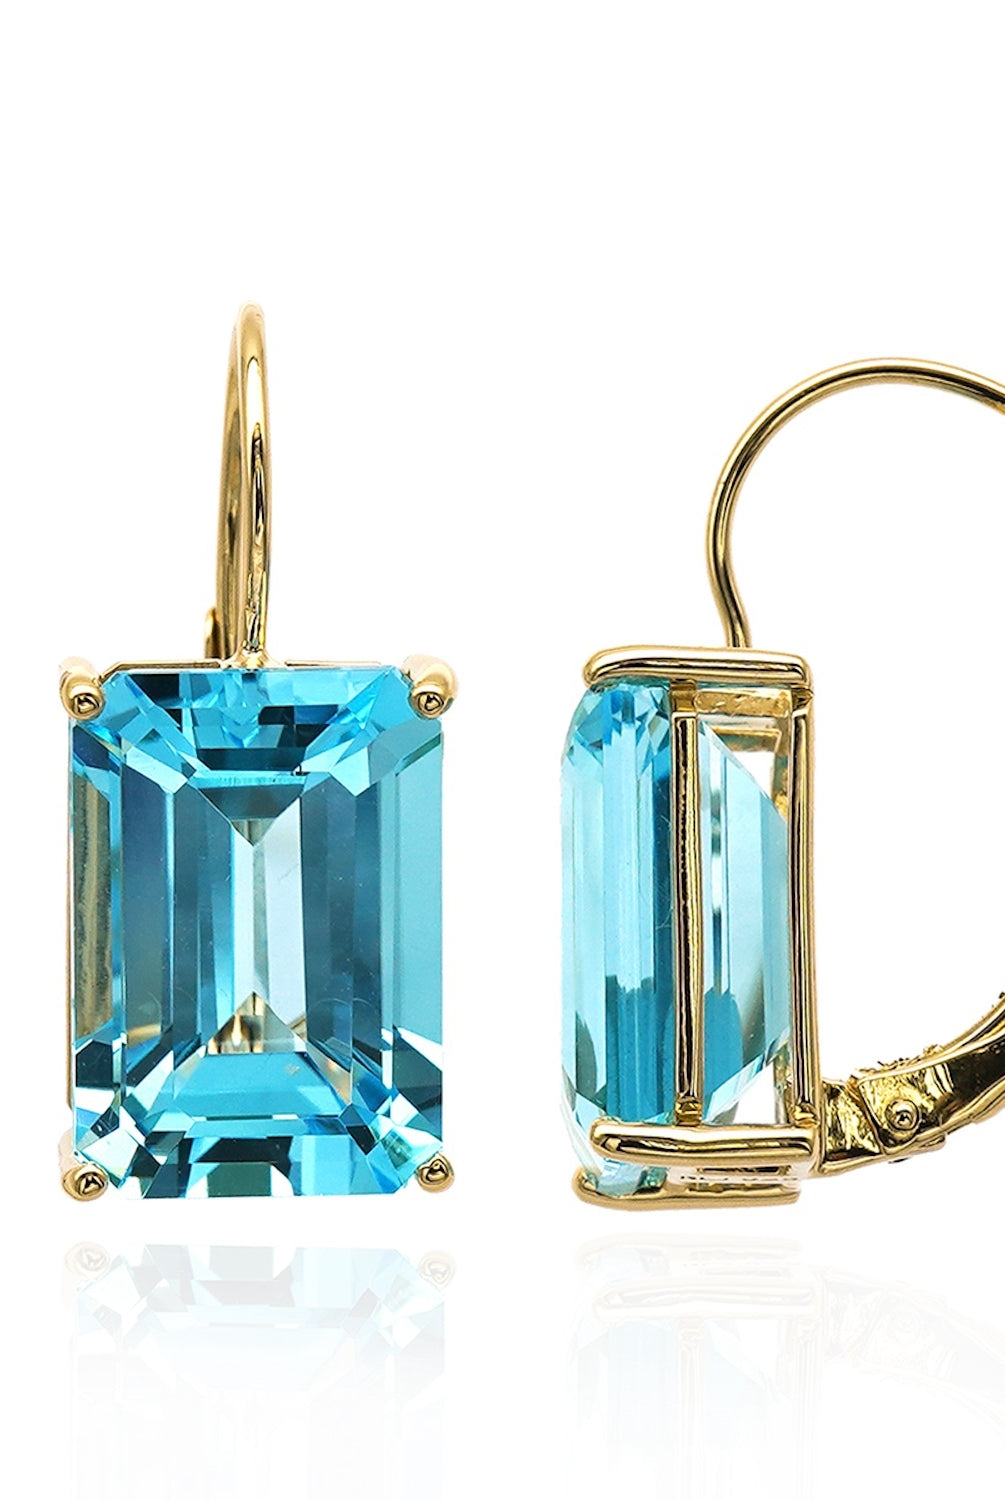 Baguette cut gemstone earrings with Swiss blue topaz